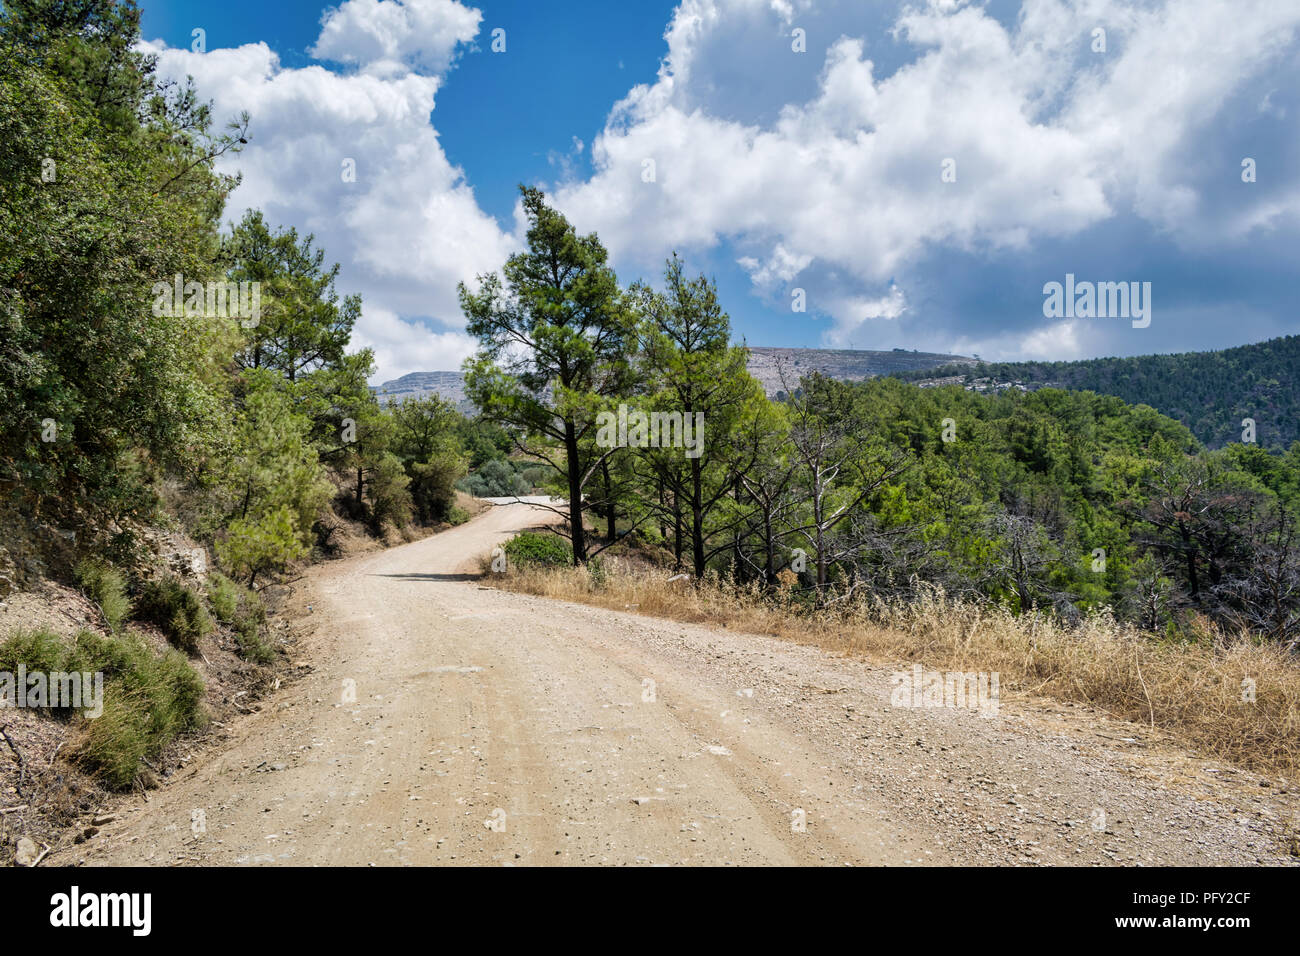 Esta es una fotografía de un bosque remoto camino de la isla griega de Rodas. Foto de stock